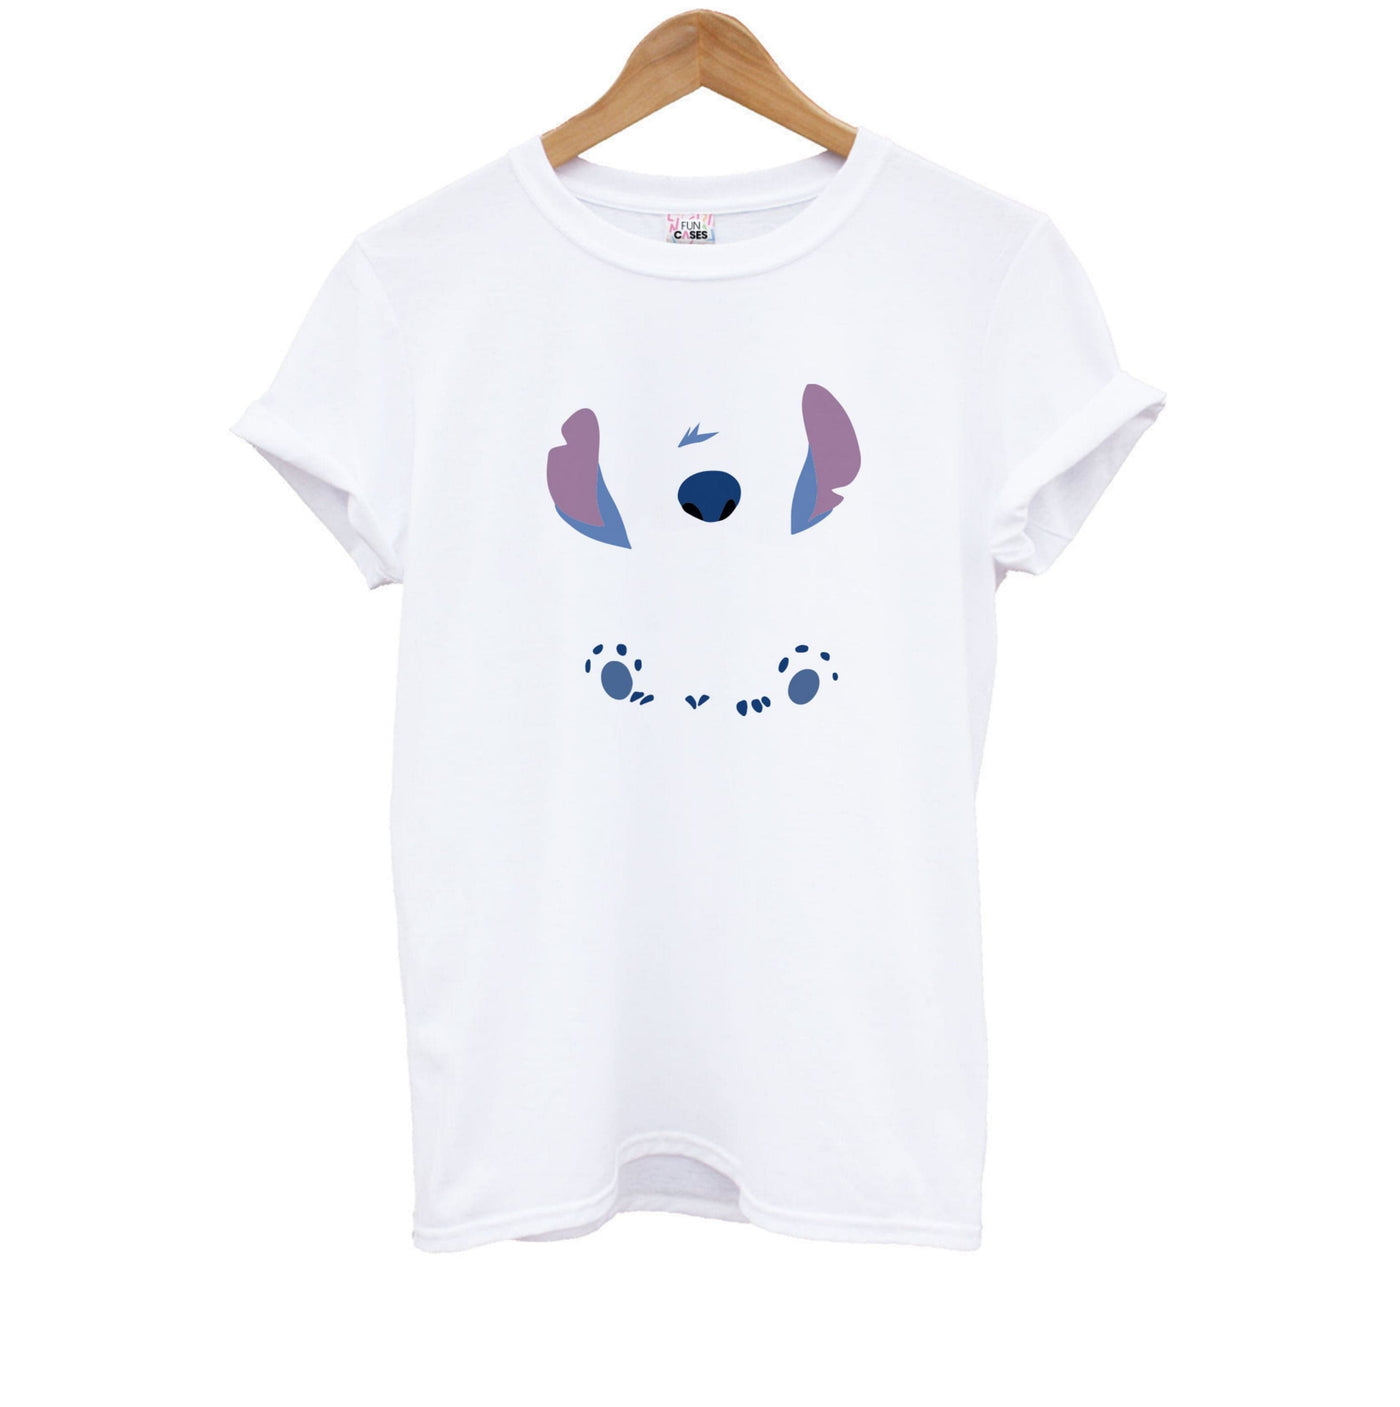 Stitch - Disney Kids T-Shirt